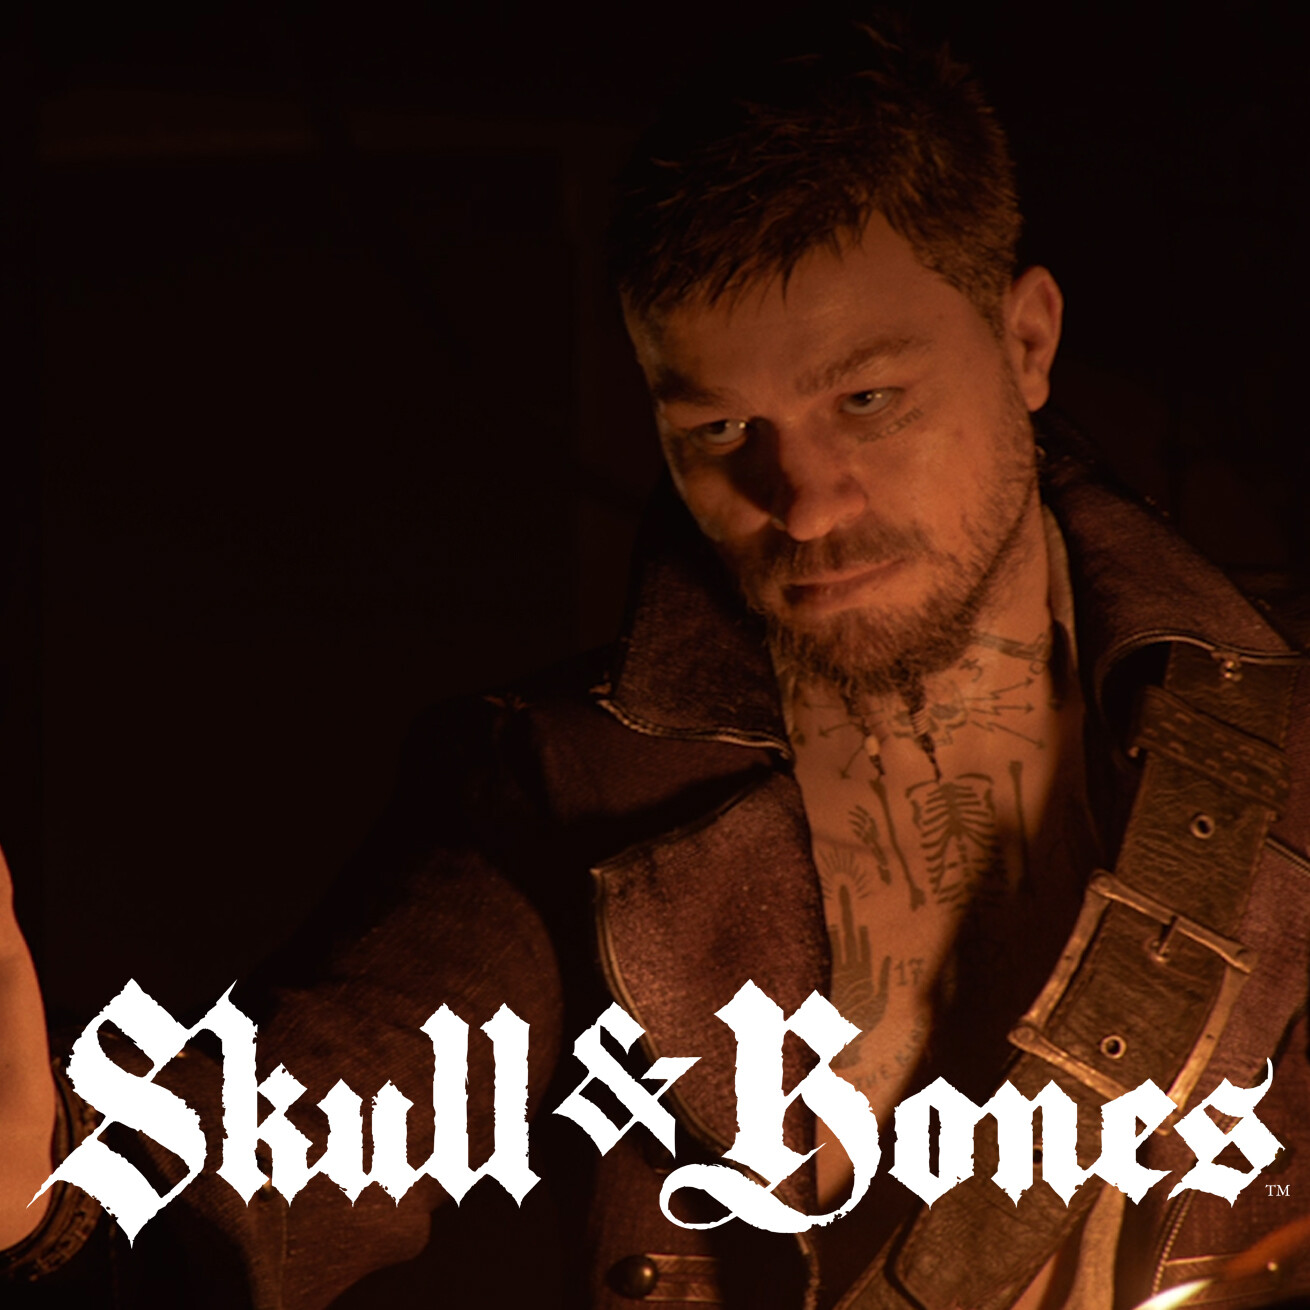 ArtStation - Skull and Bones: World Context Trailer